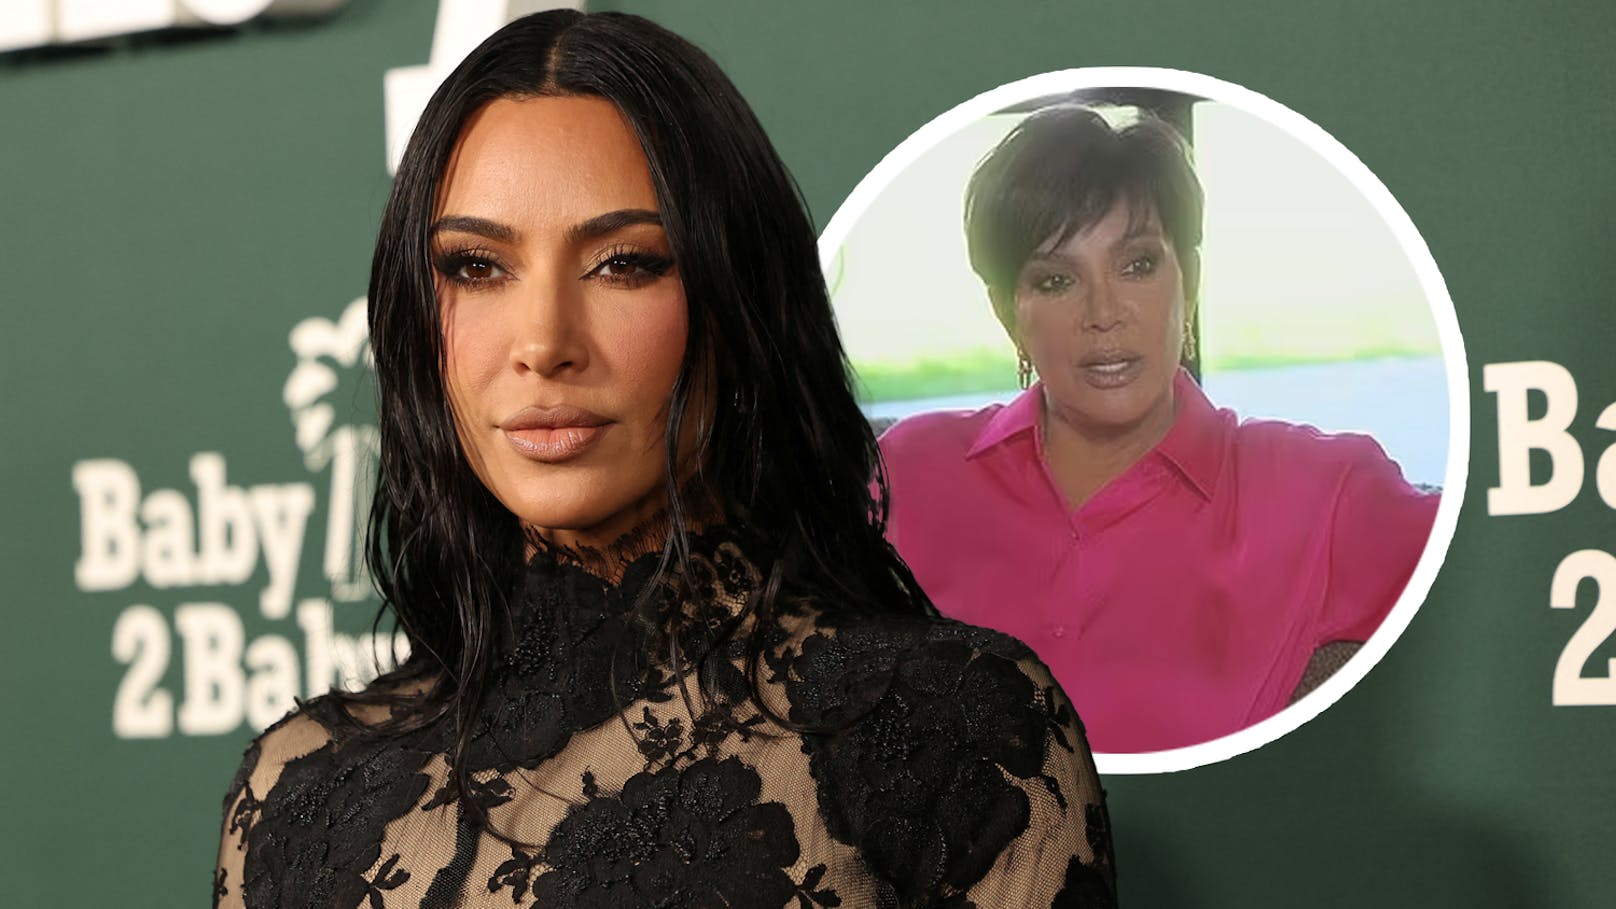 Familie in großer Sorge um Kim Kardashians Gesundheit